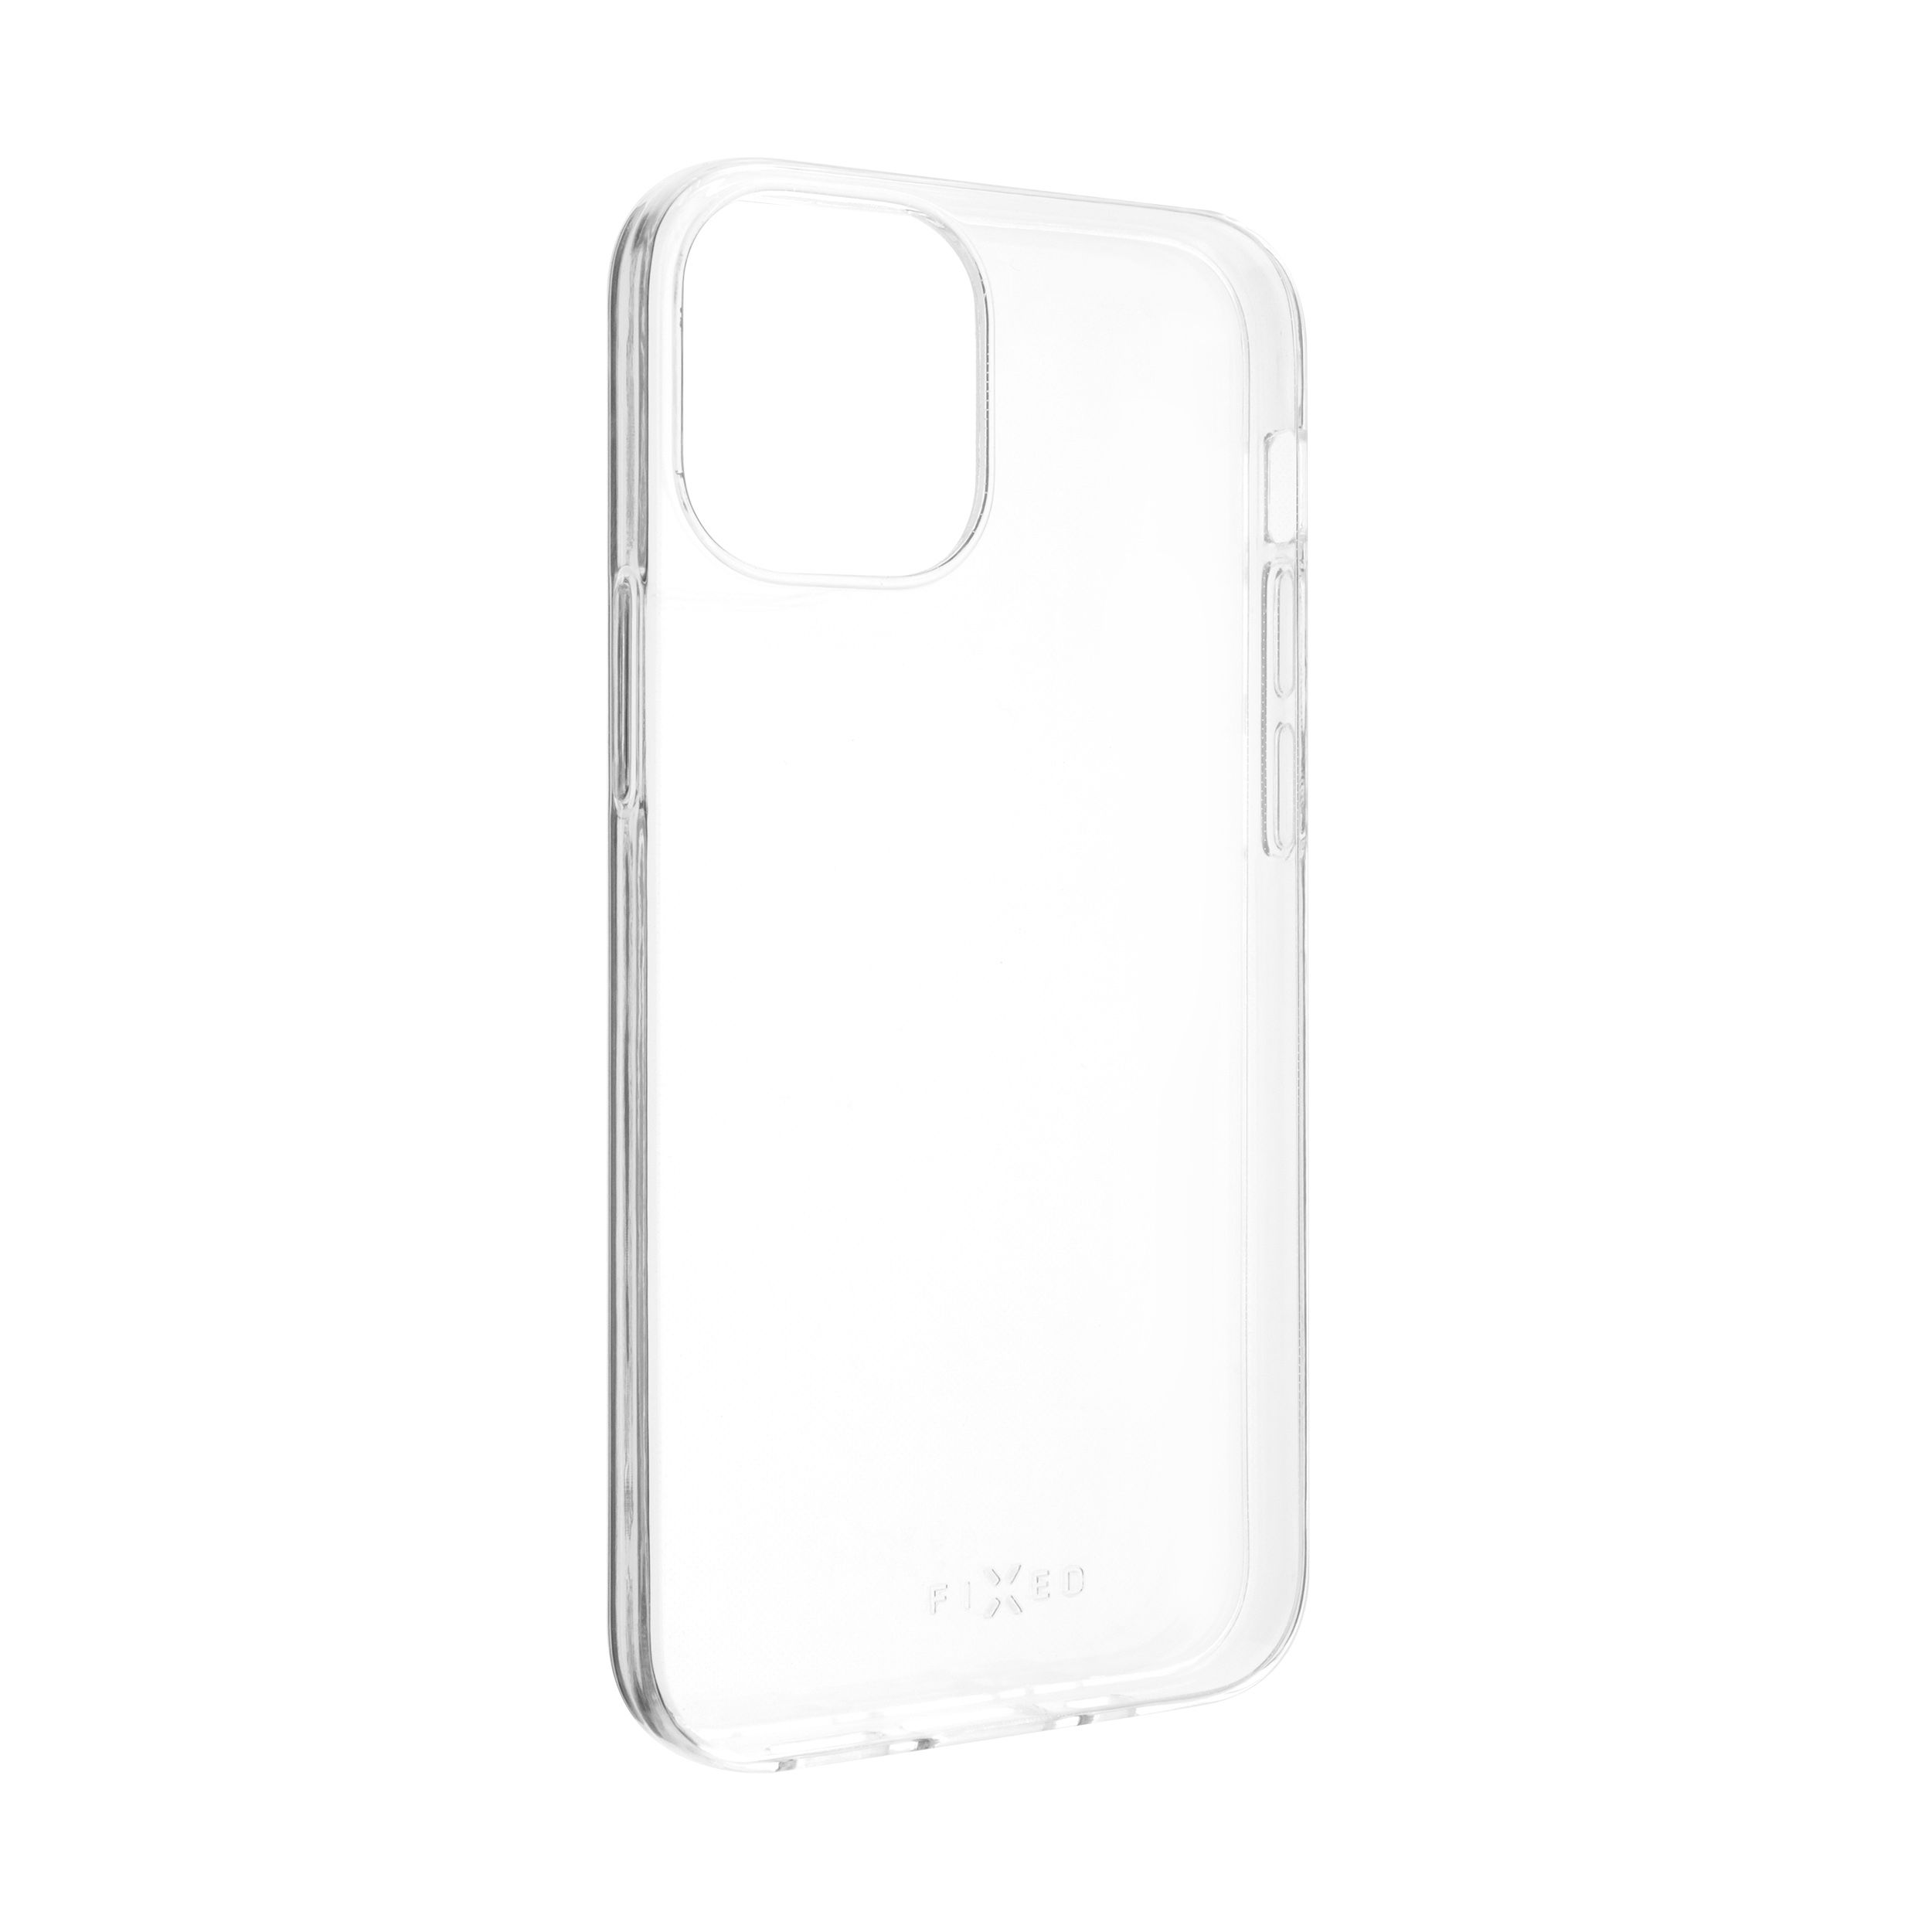 TPU gelové pouzdro pro Apple iPhone 12 mini, čiré